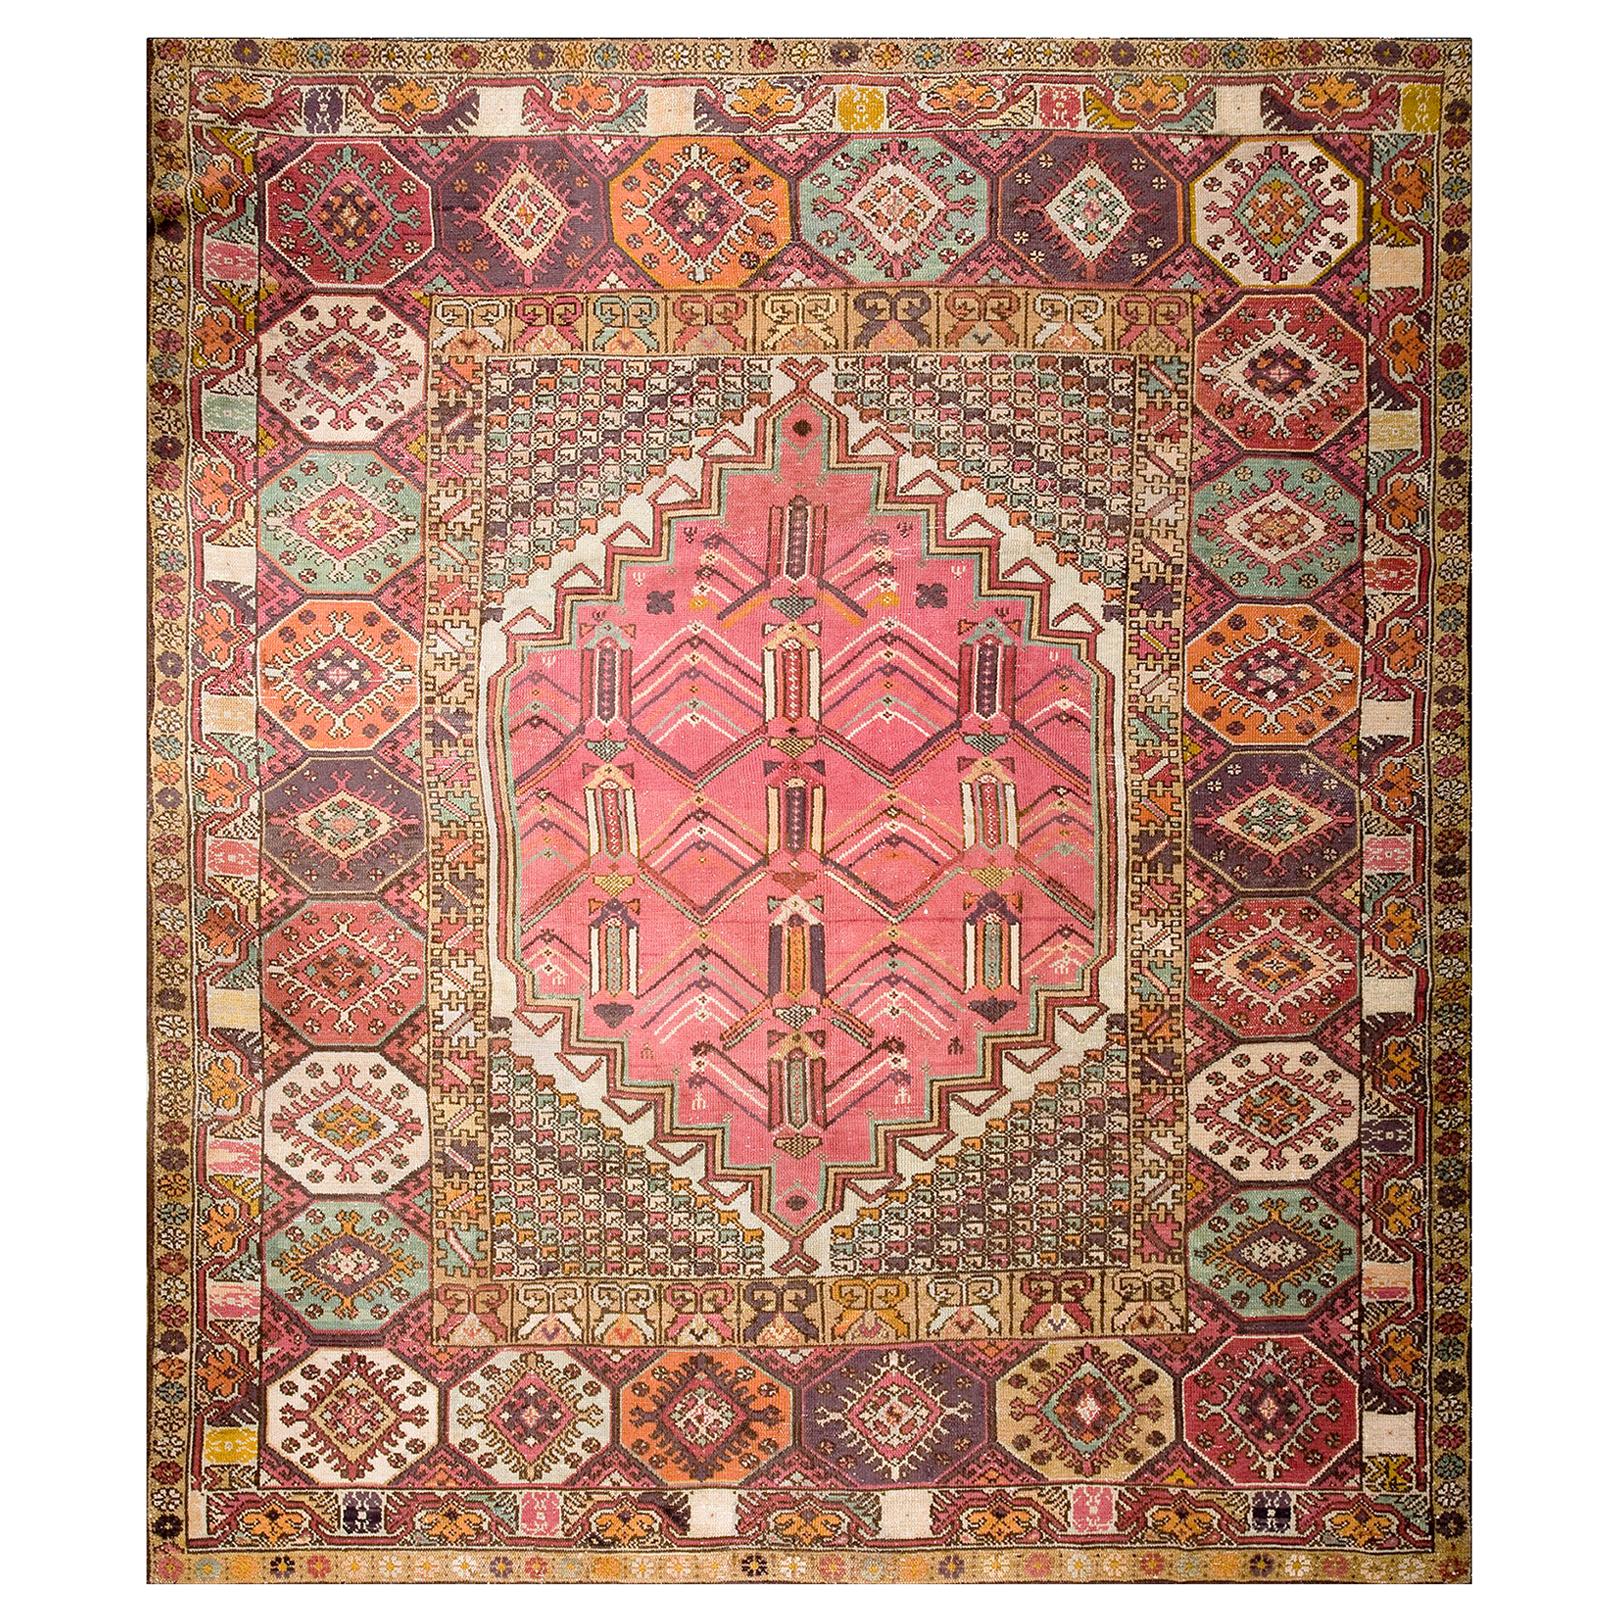 1920s Jerusalem Carpet ( 9'6" x 11'8" - 290 x 355 )